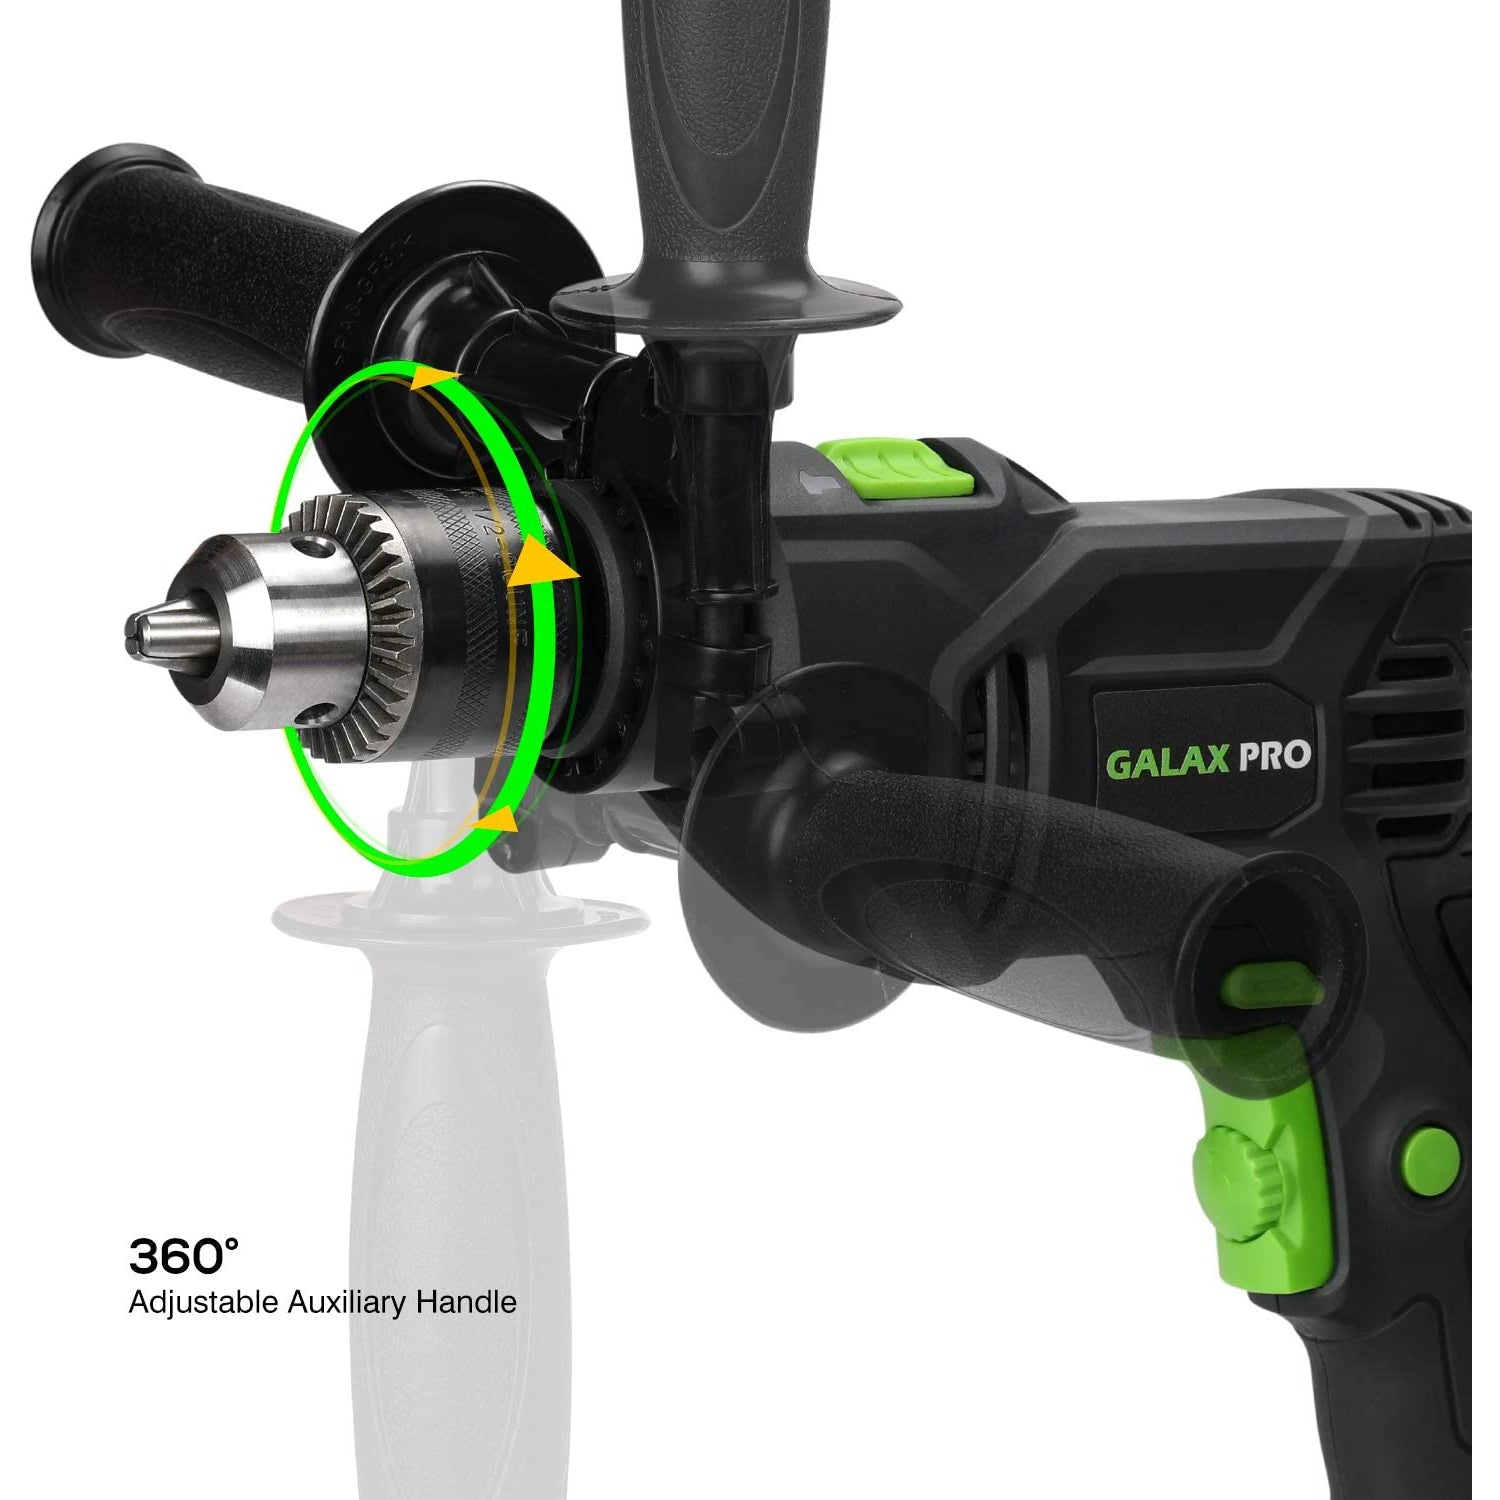 Galax Pro 57322 Hammer Drill, 600W Electic Corded Drill, 13mm Metal Chuck, 0-3000RPM